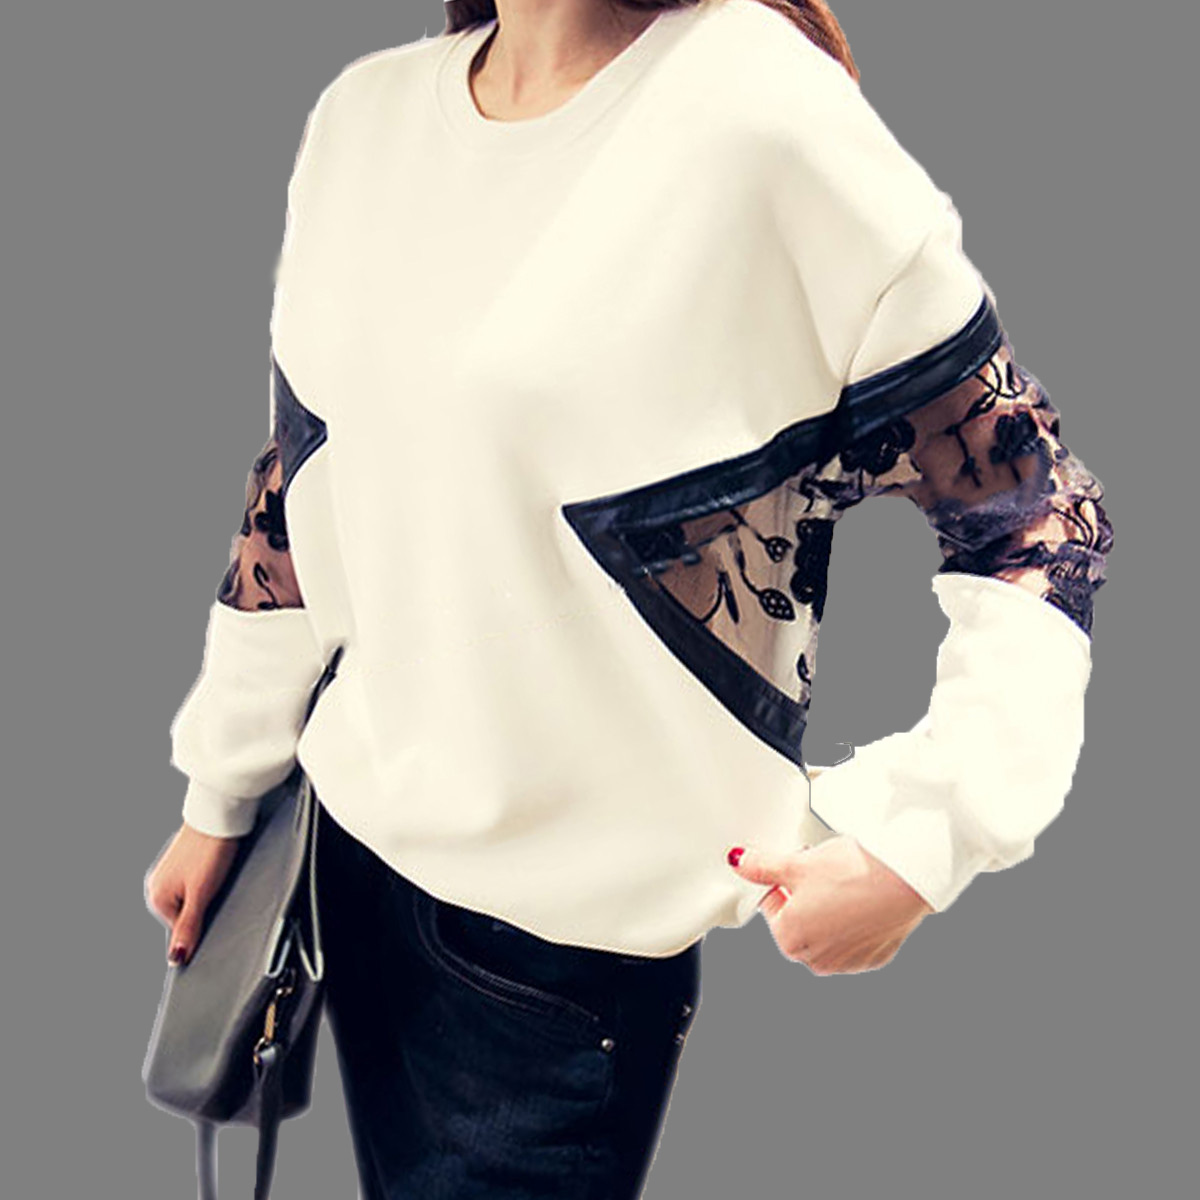   Sweatershirt            sudaderas mujer 2015 Blusas